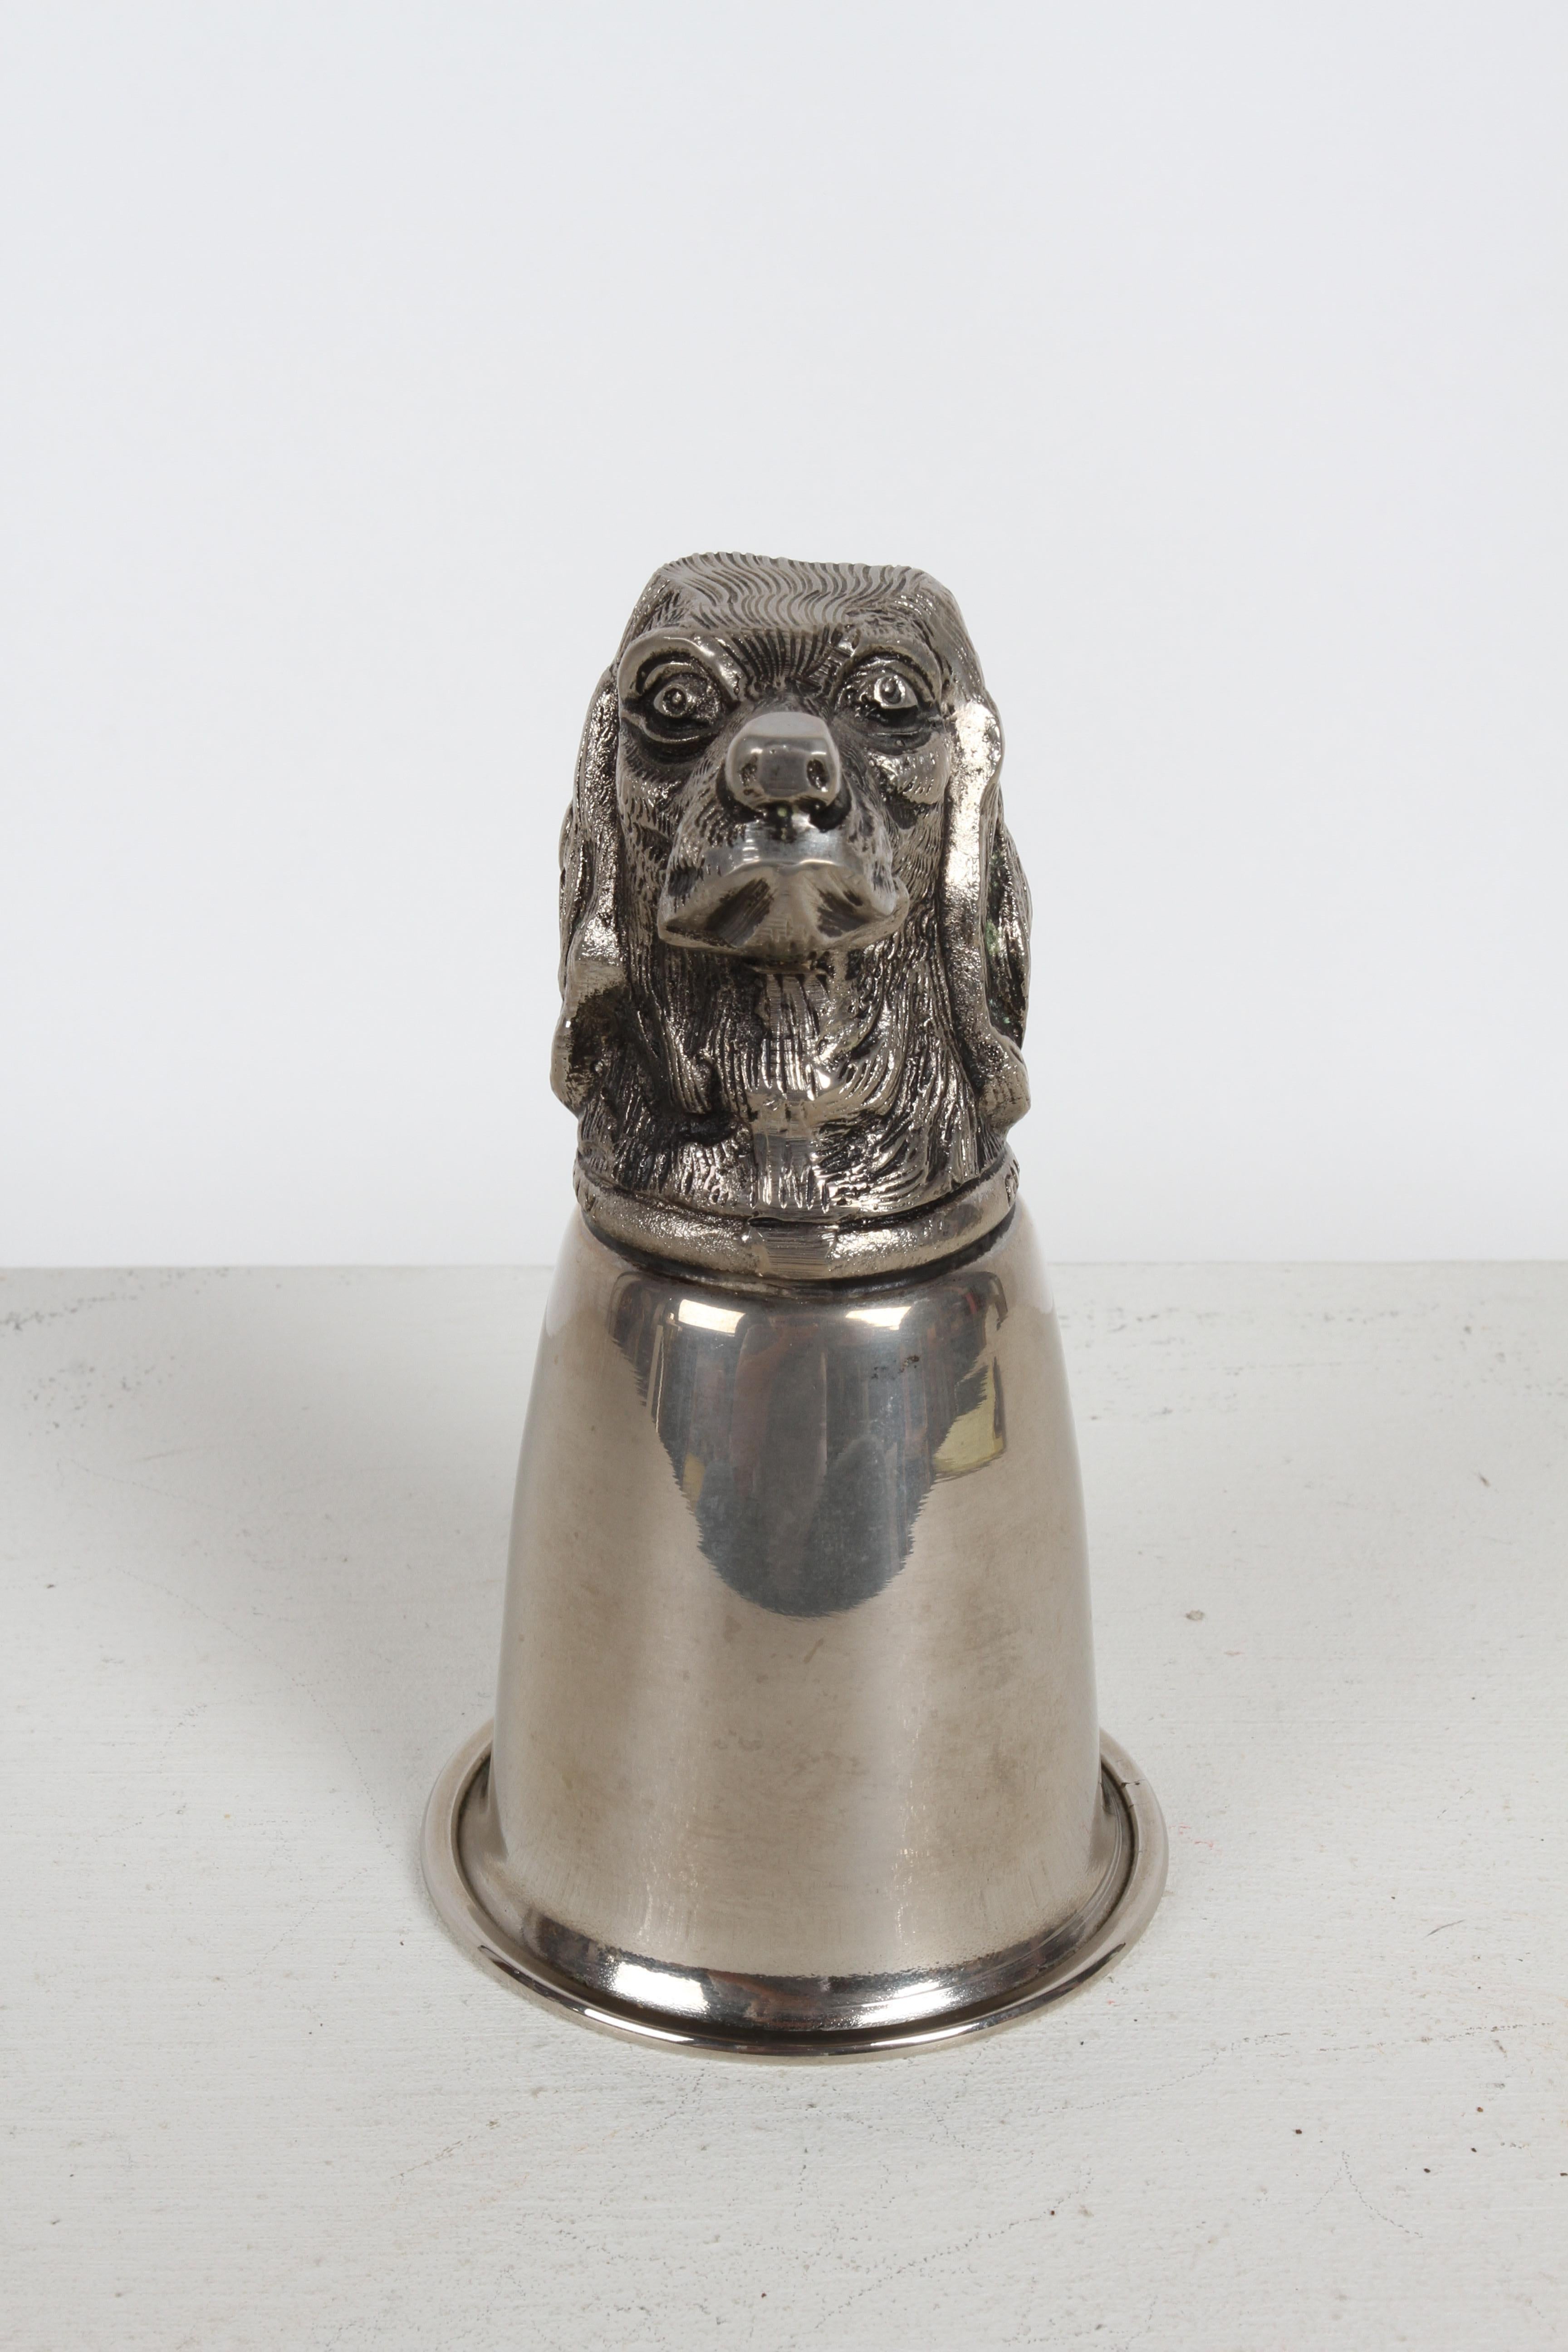 CIRCA 1970er Jahre Gucci - Italien Versilbert Hundekopf (English Pointer) Jagd Reiter Thema Steigbügel Cup. Dieser Trink-/Gefäßbecher kann auf dem Kopf ruhen oder umgedreht, mit dem Kopf deutlich sichtbar, als Skulptur oder kleine Trophäe auf Ihrer